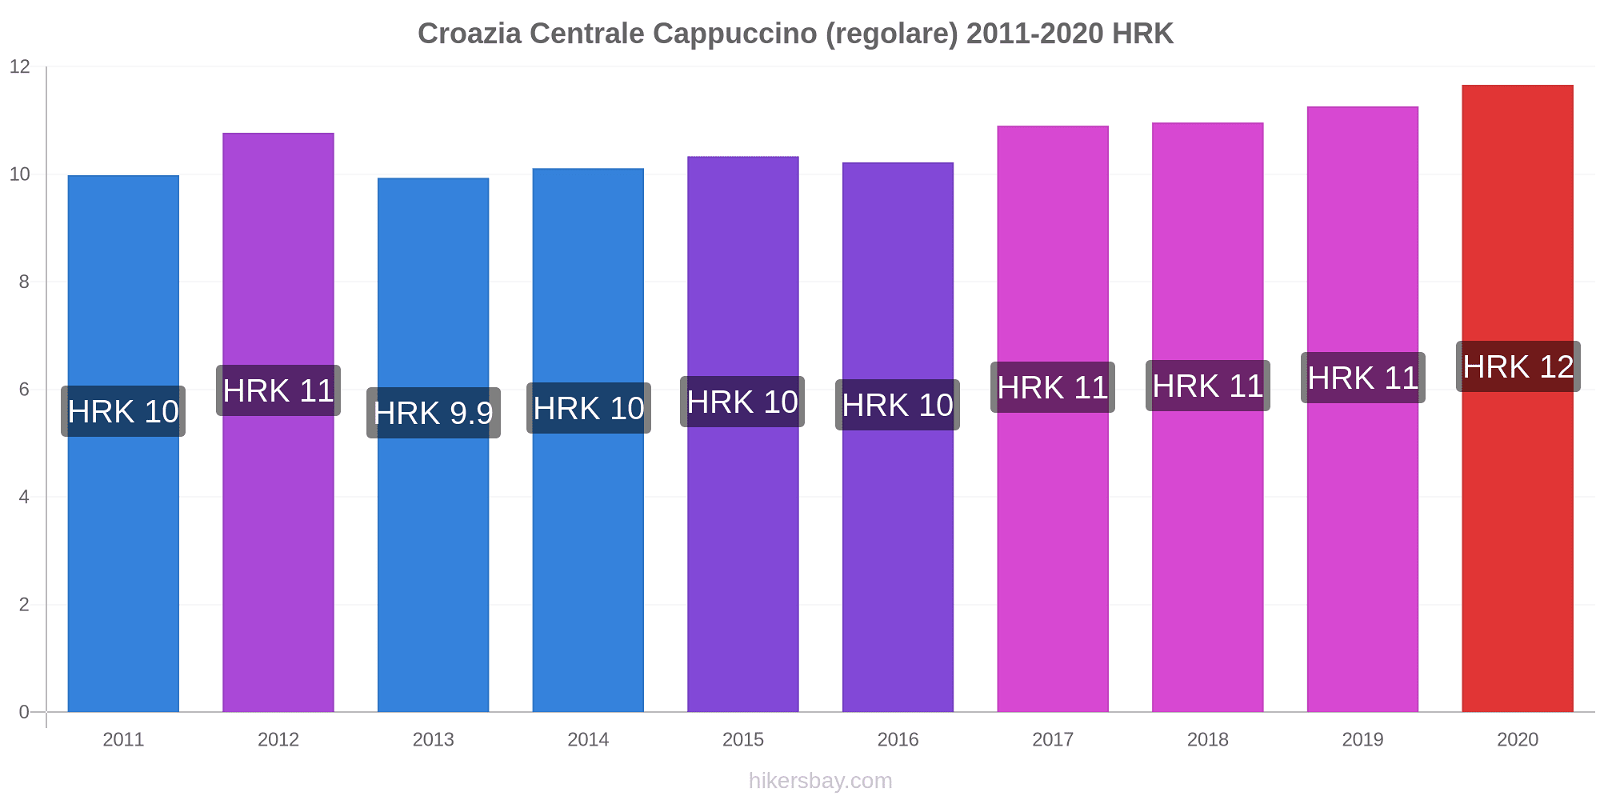 Croazia Centrale variazioni di prezzo Cappuccino (normale) hikersbay.com